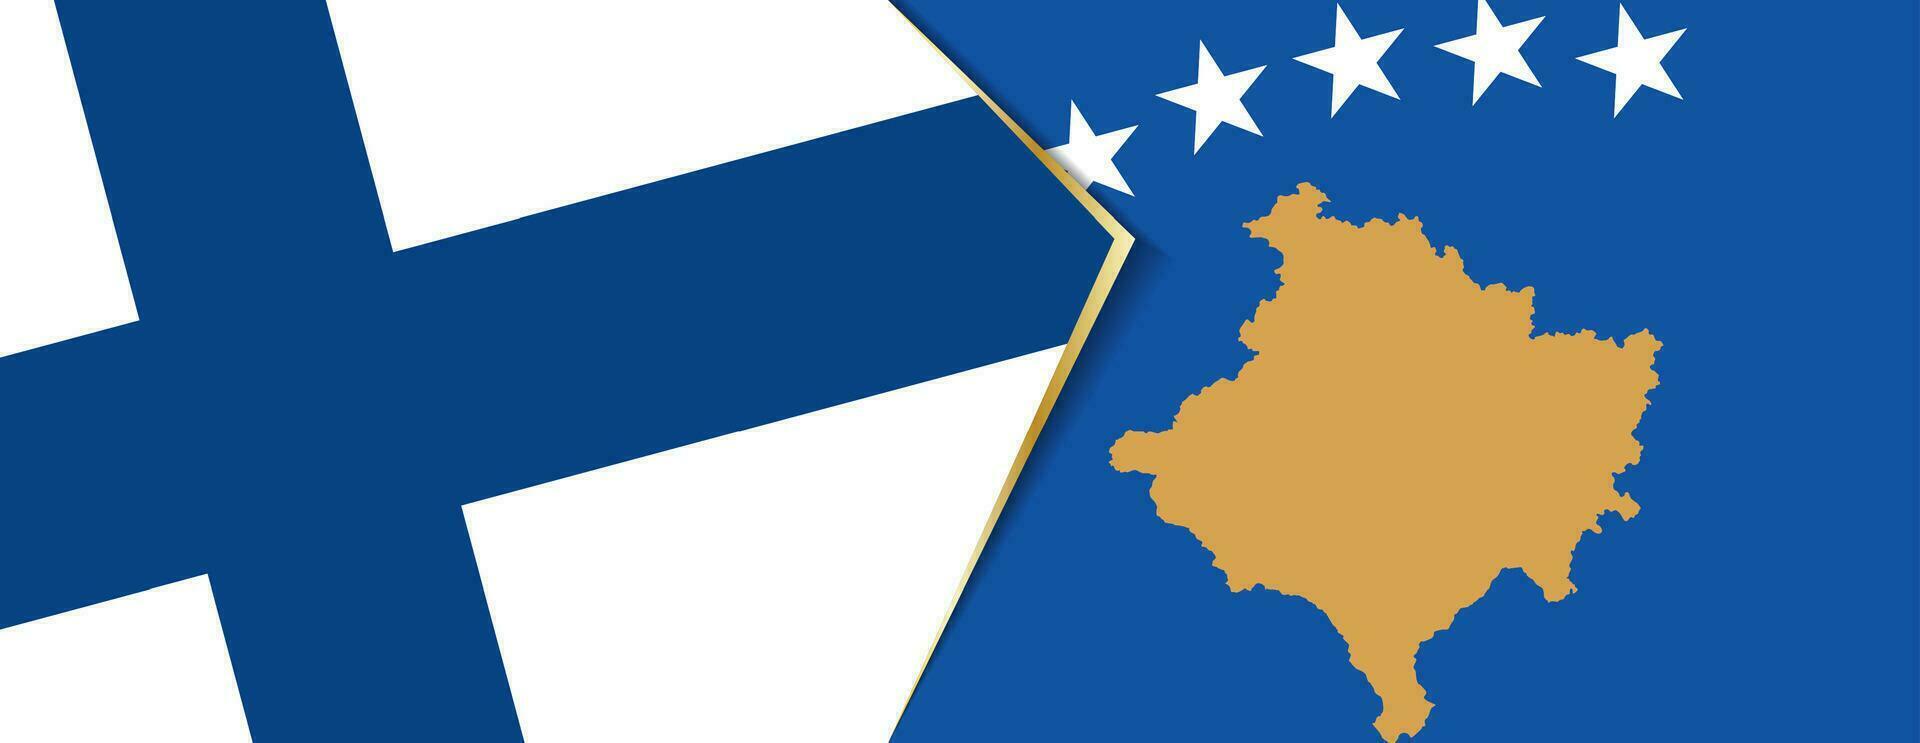 Finland en Kosovo vlaggen, twee vector vlaggen.